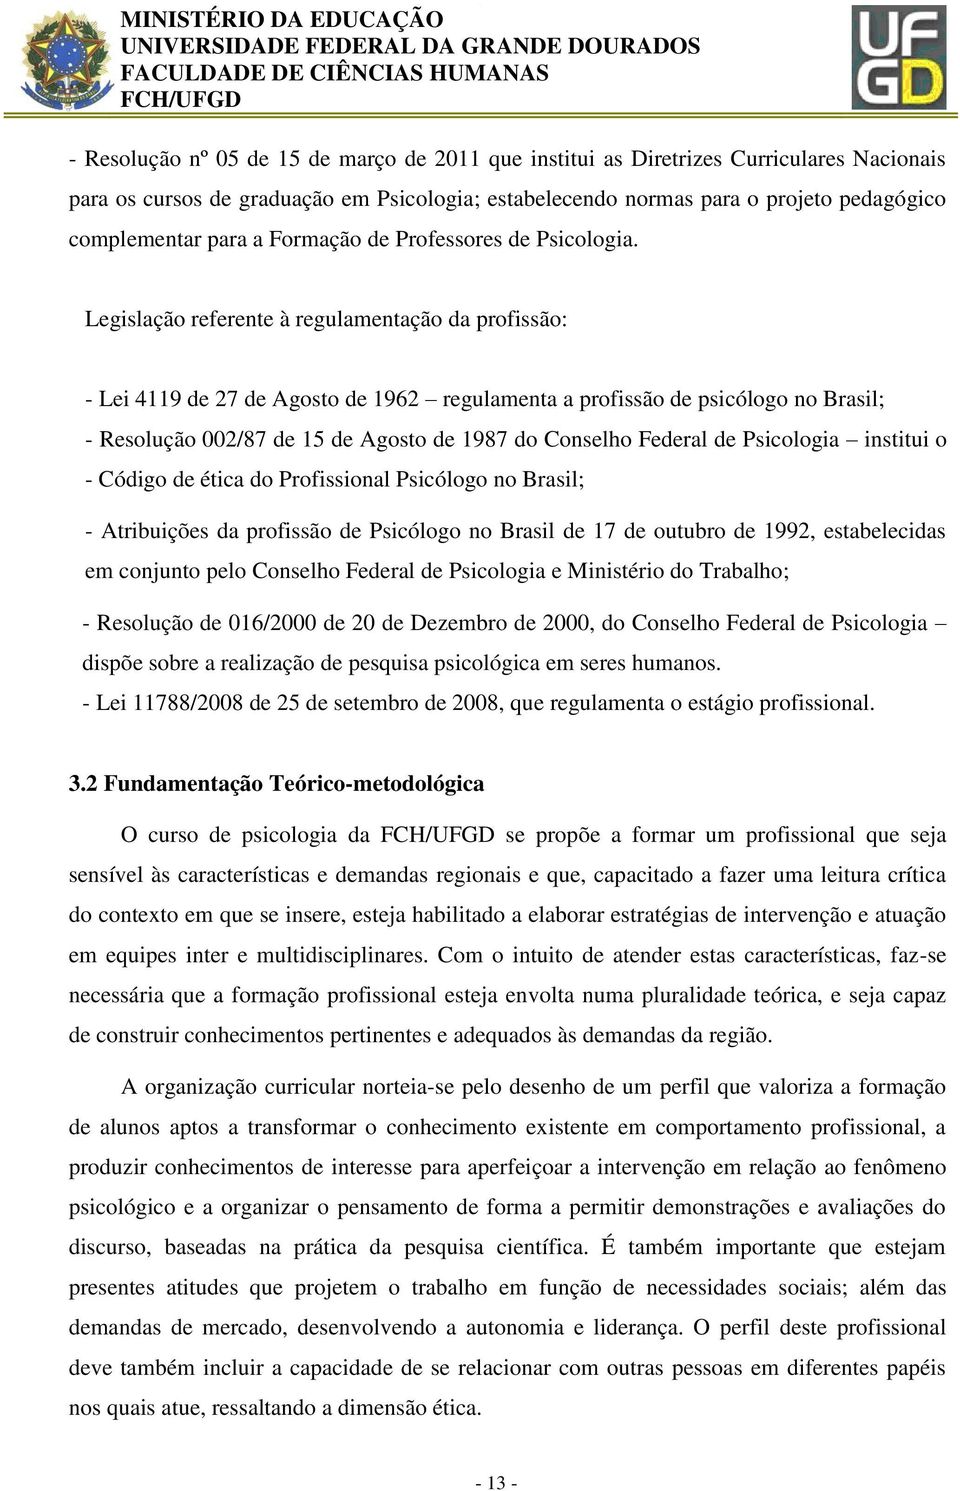 Legislação referente à regulamentação da profissão: - Lei 4119 de 27 de Agosto de 1962 regulamenta a profissão de psicólogo no Brasil; - Resolução 002/87 de 15 de Agosto de 1987 do Conselho Federal